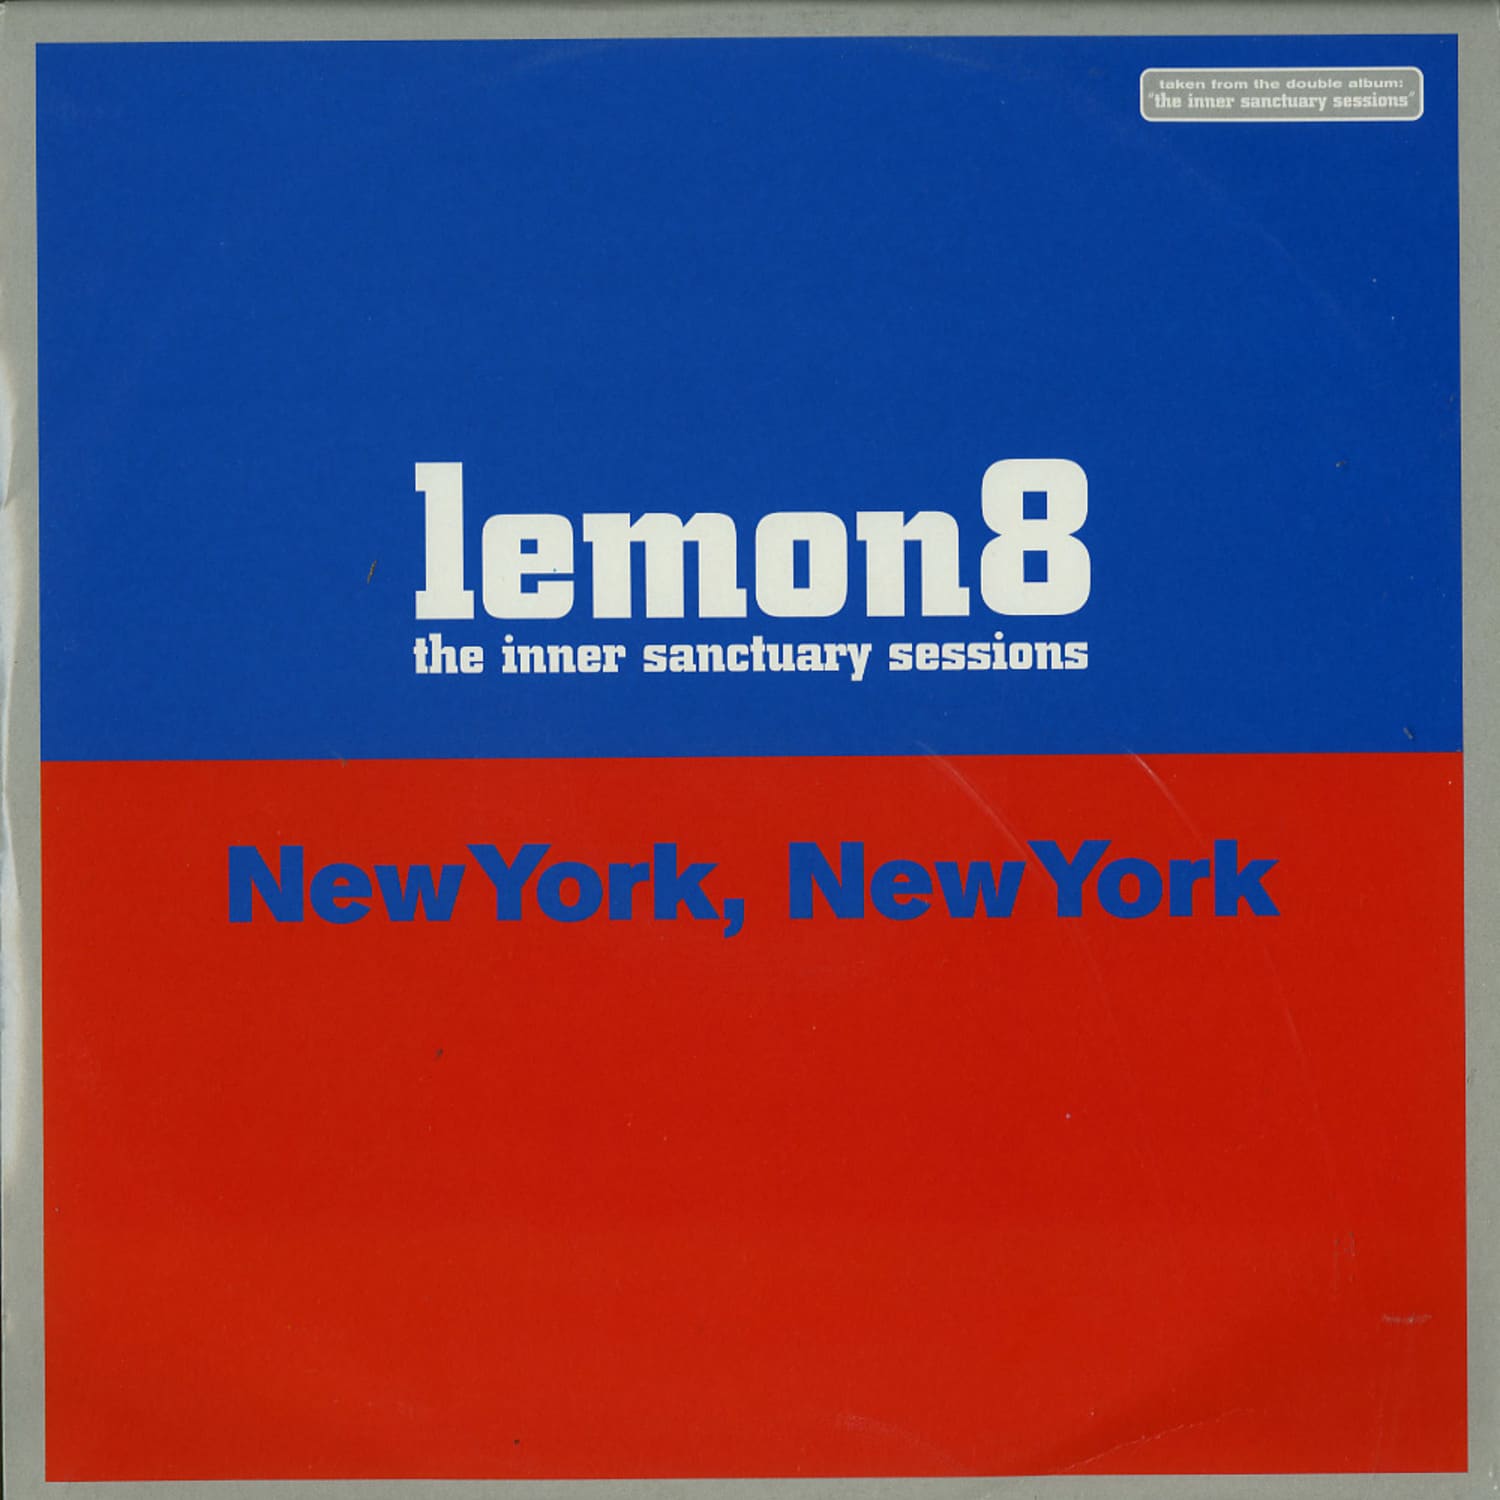 Lemon 8 - The Inner Sanctuary Sessions - New York New York